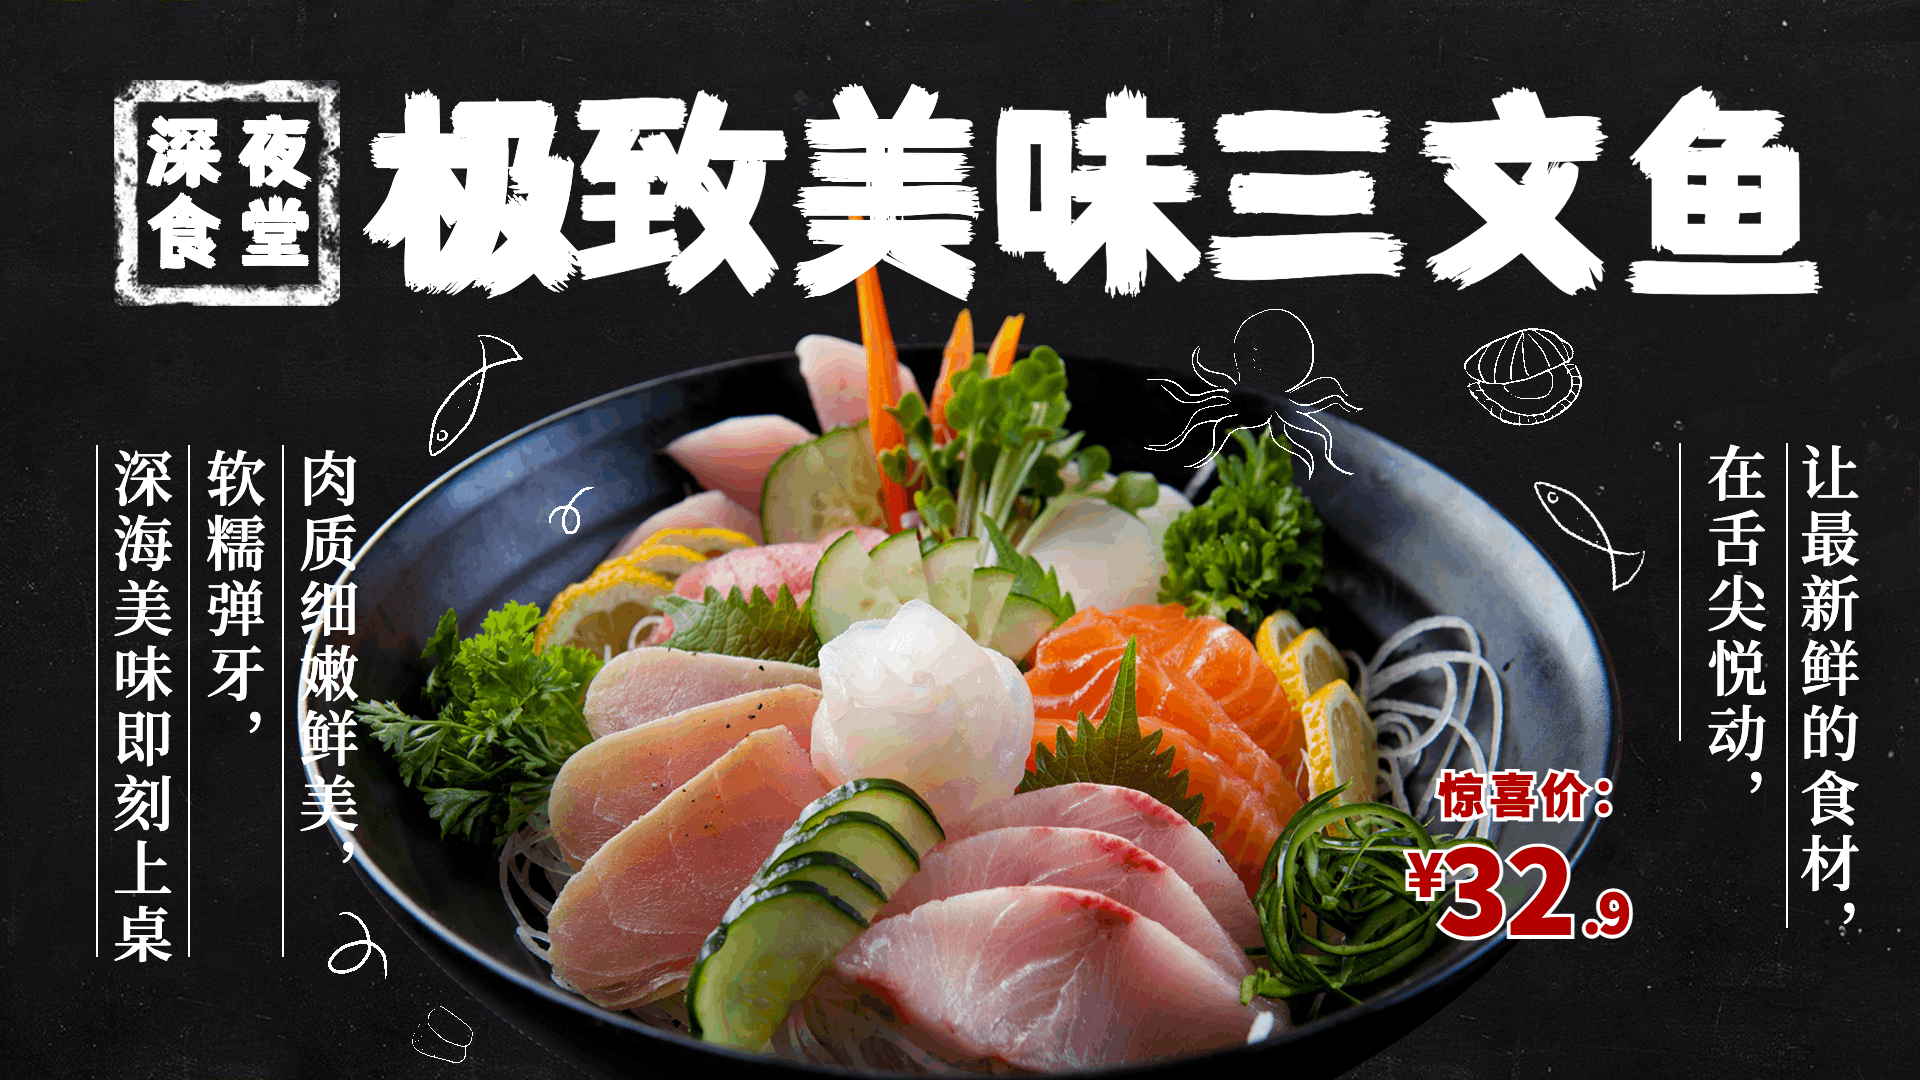 日本料理三文鱼推荐电视屏横屏动图预览效果